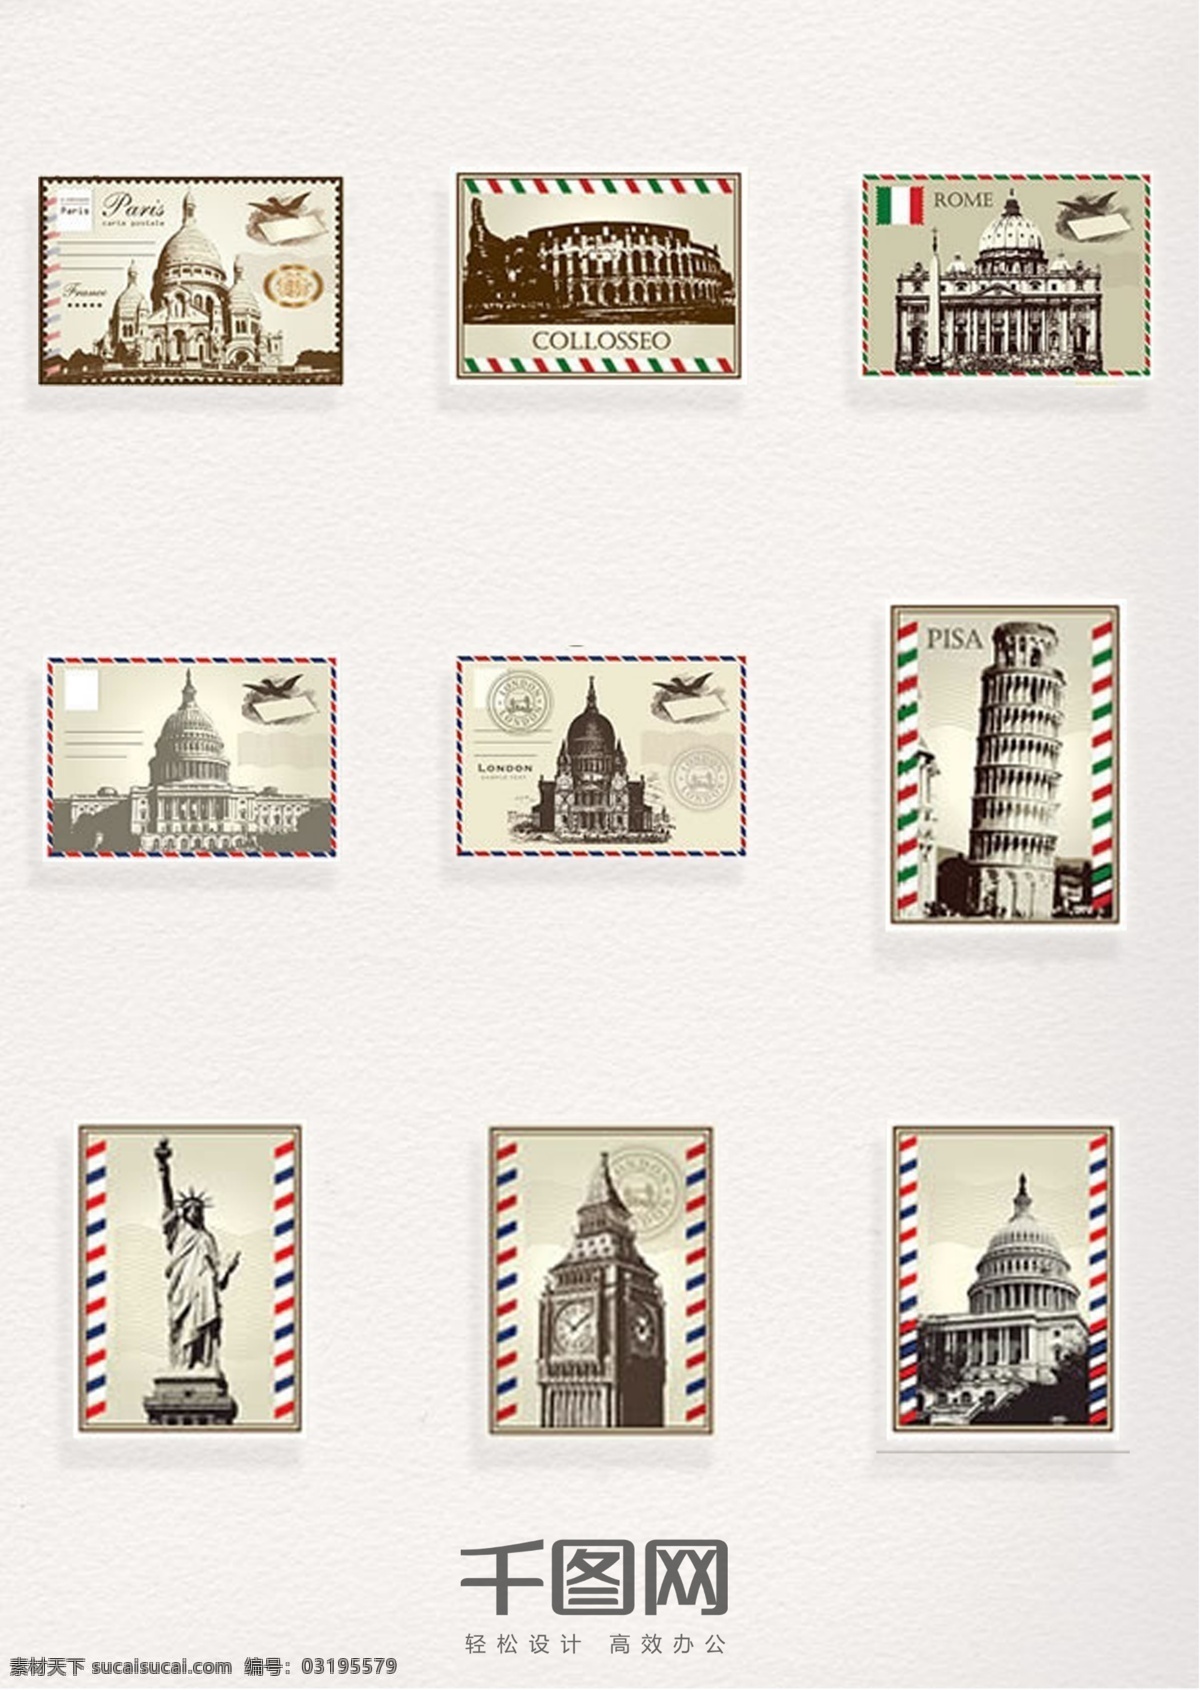 世界各国 标志性 建筑 邮票 元素 装饰 图案 标志性建筑 邮票元素 邮票图案 邮票装饰元素 彩色邮票